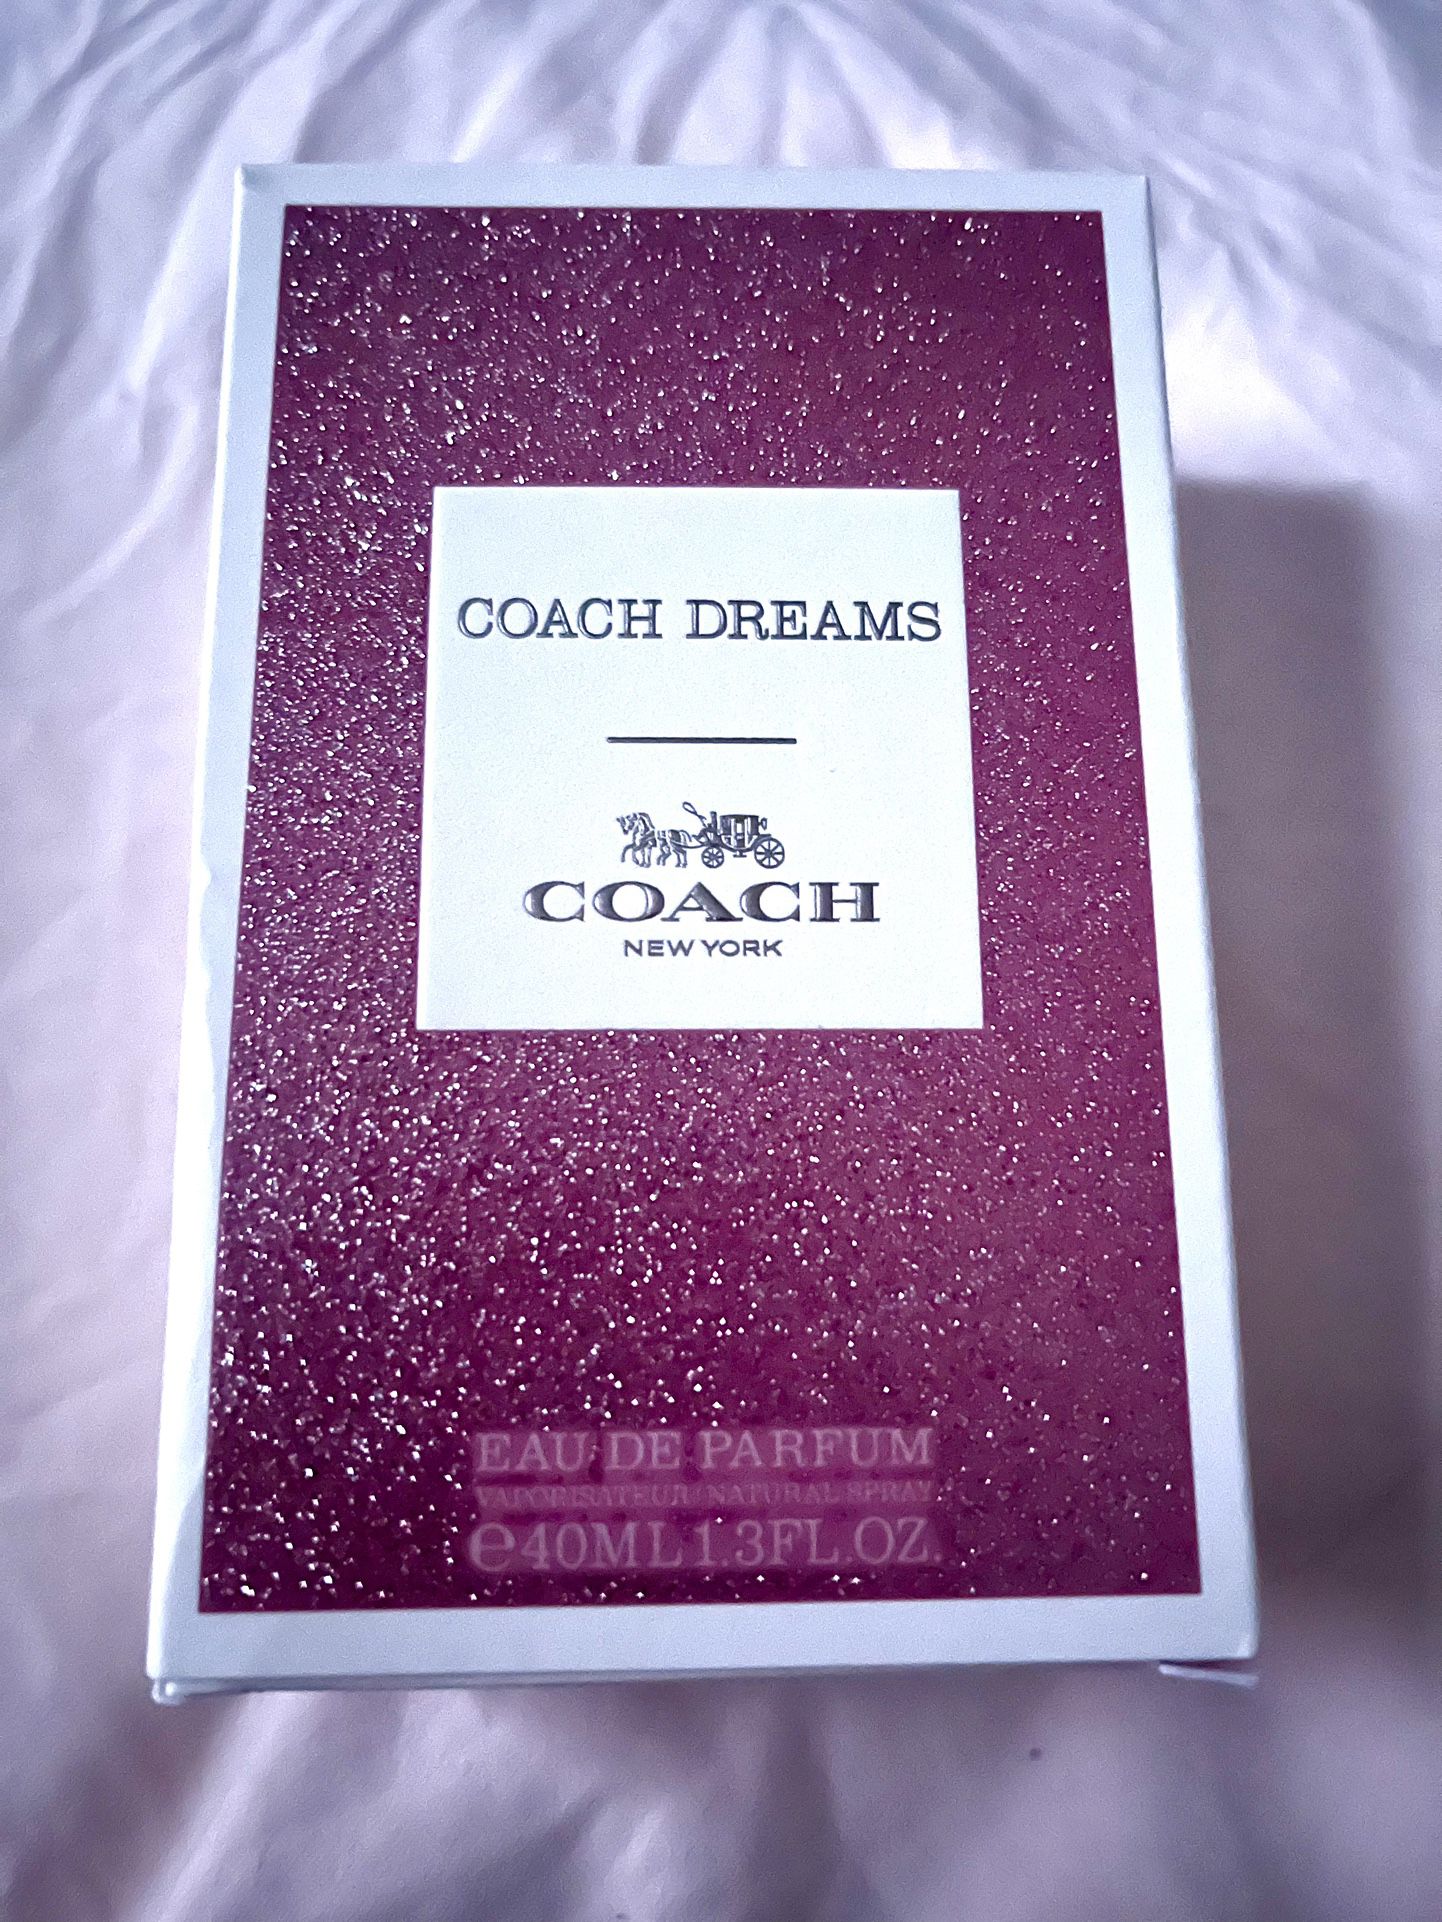 Coach Dreams Perfume 